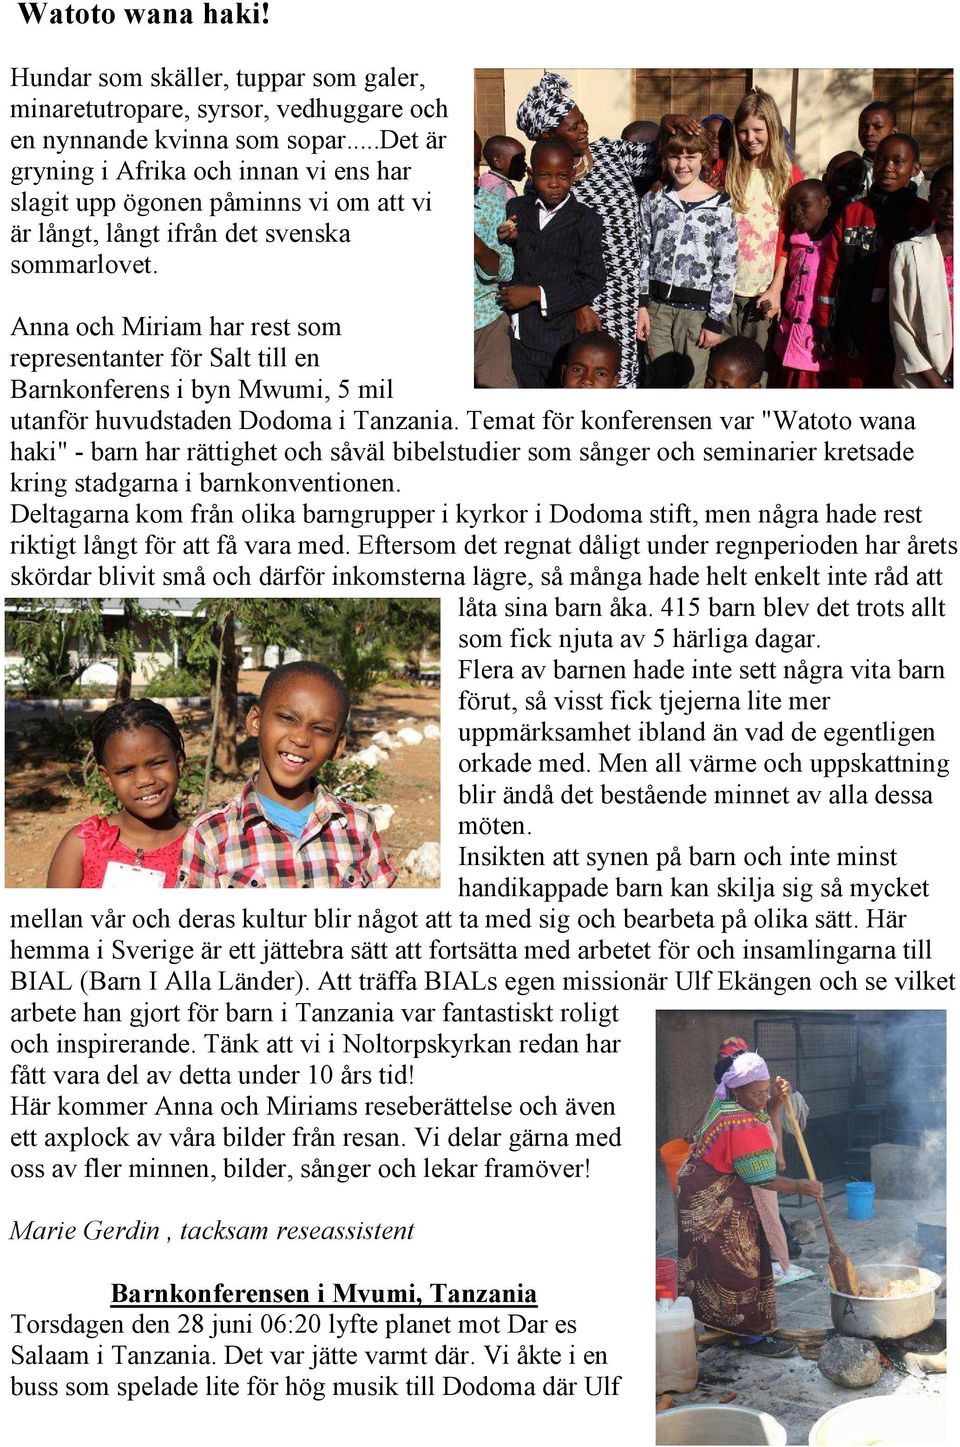 Anna och Miriam har rest som representanter för Salt till en Barnkonferens i byn Mwumi, 5 mil utanför huvudstaden Dodoma i Tanzania.